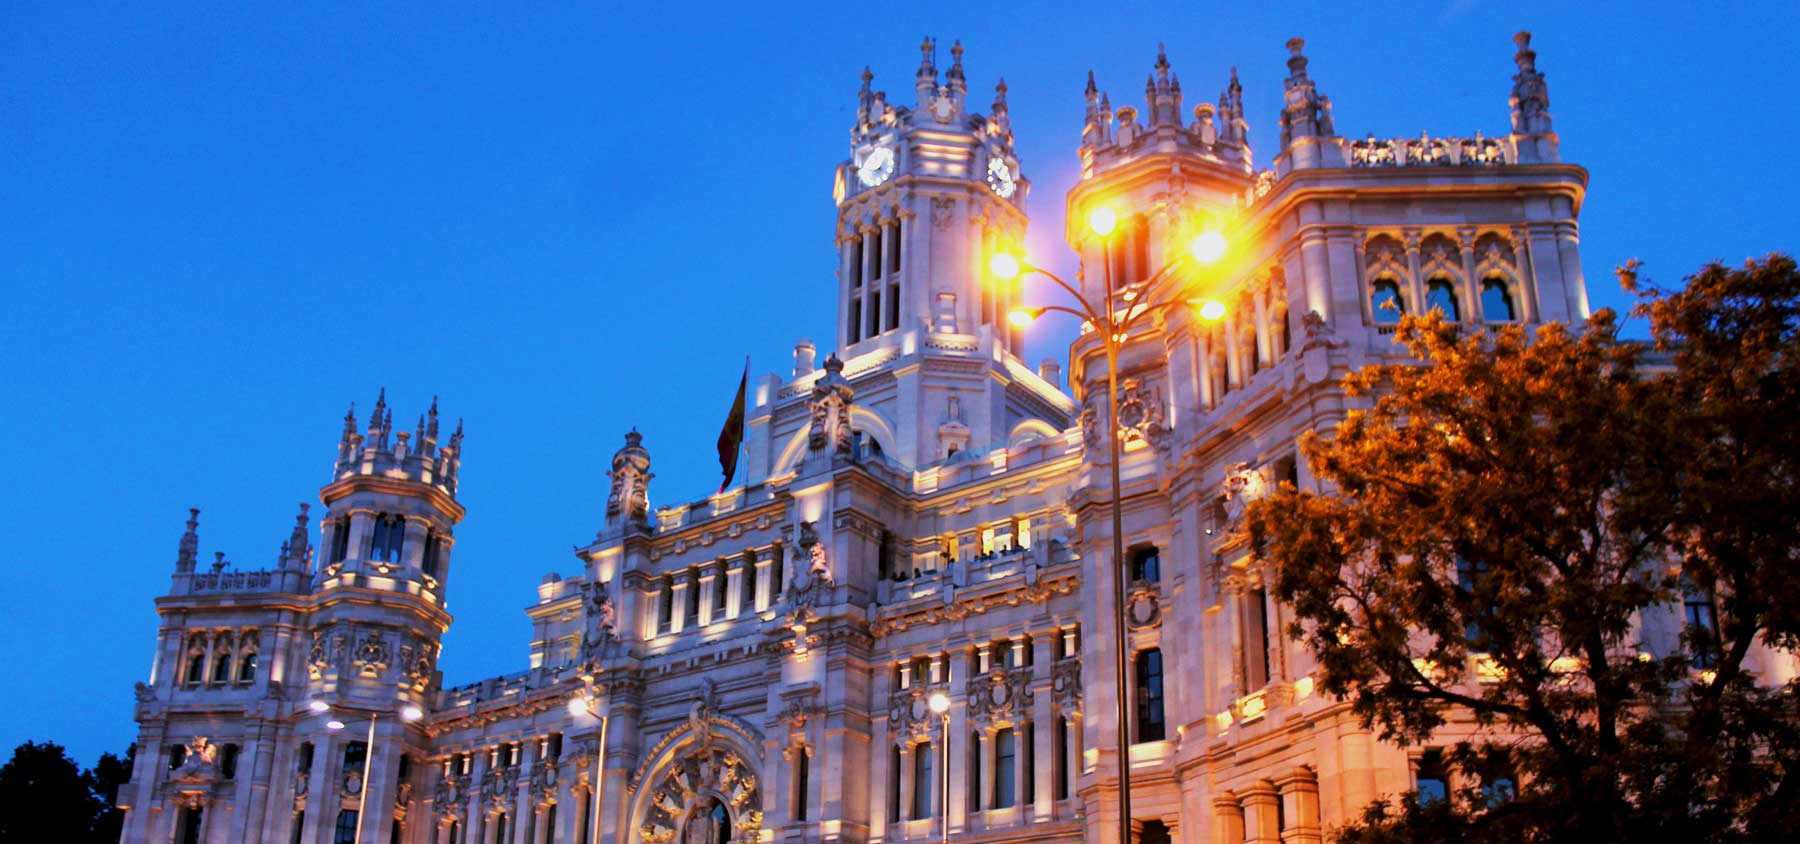 immagine per 2 - Tour città di Spagna: Triangolo d'oro (da Madrid)